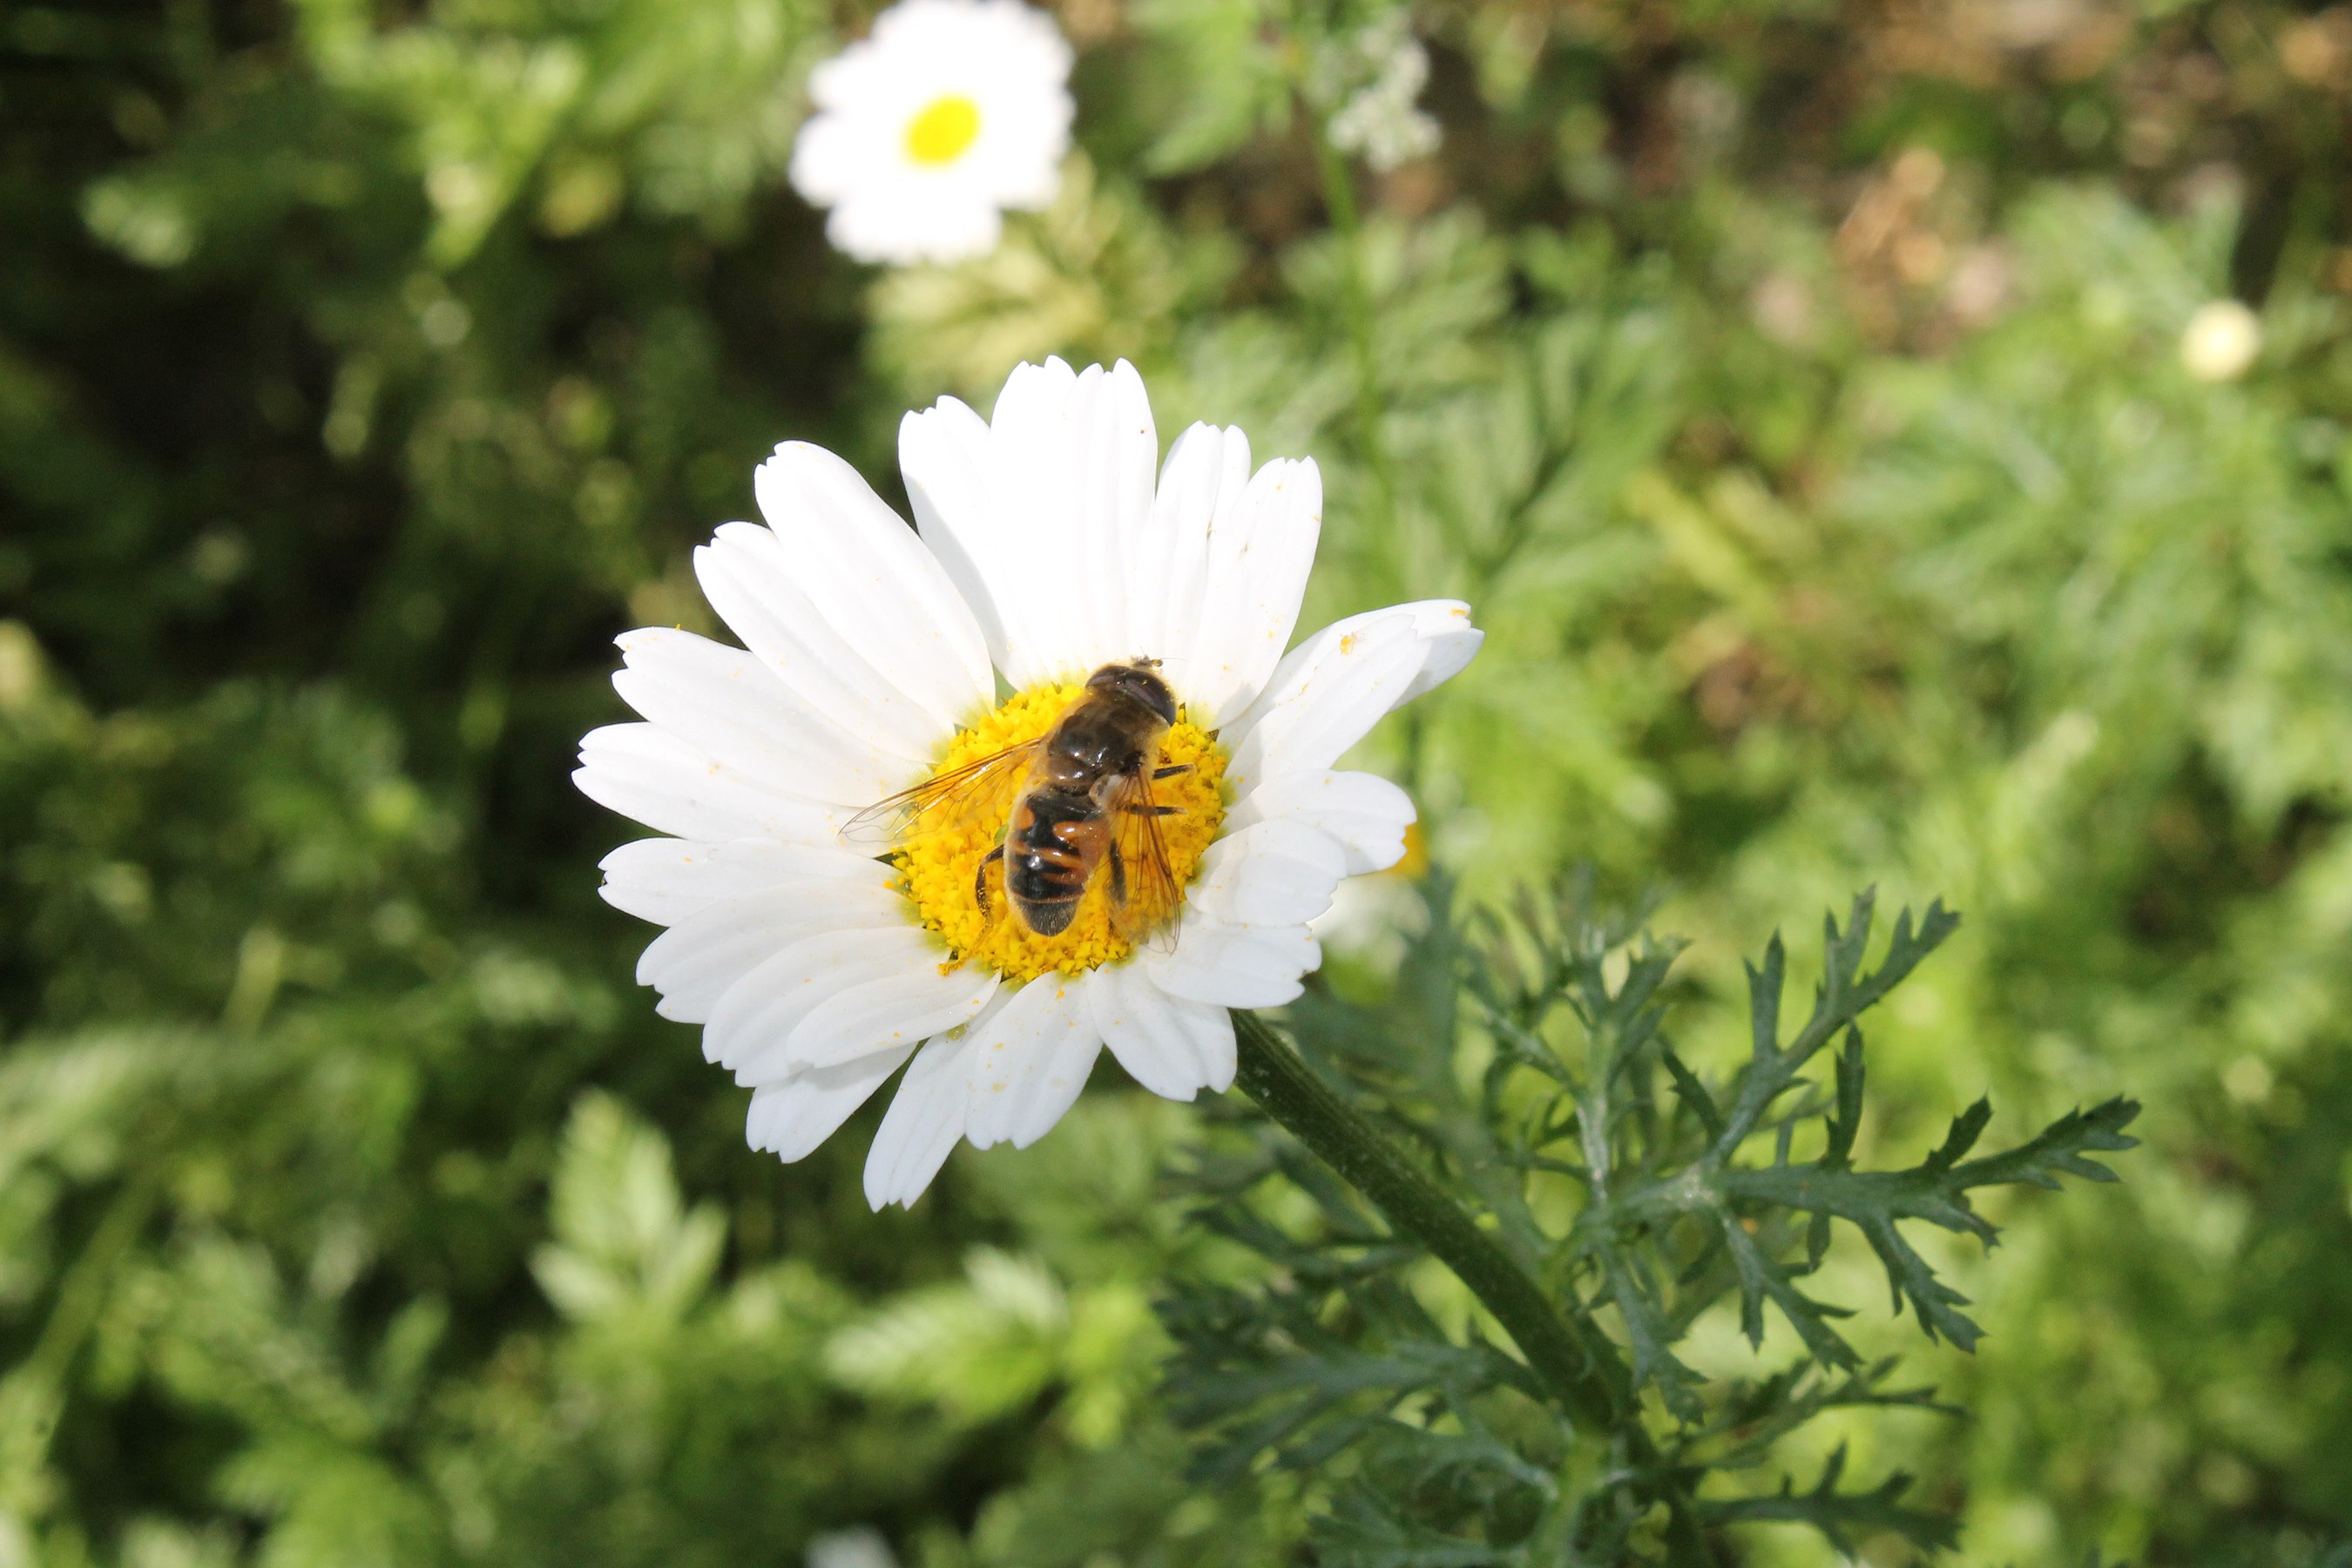 Flower and bee © Reshaiq Bayramli